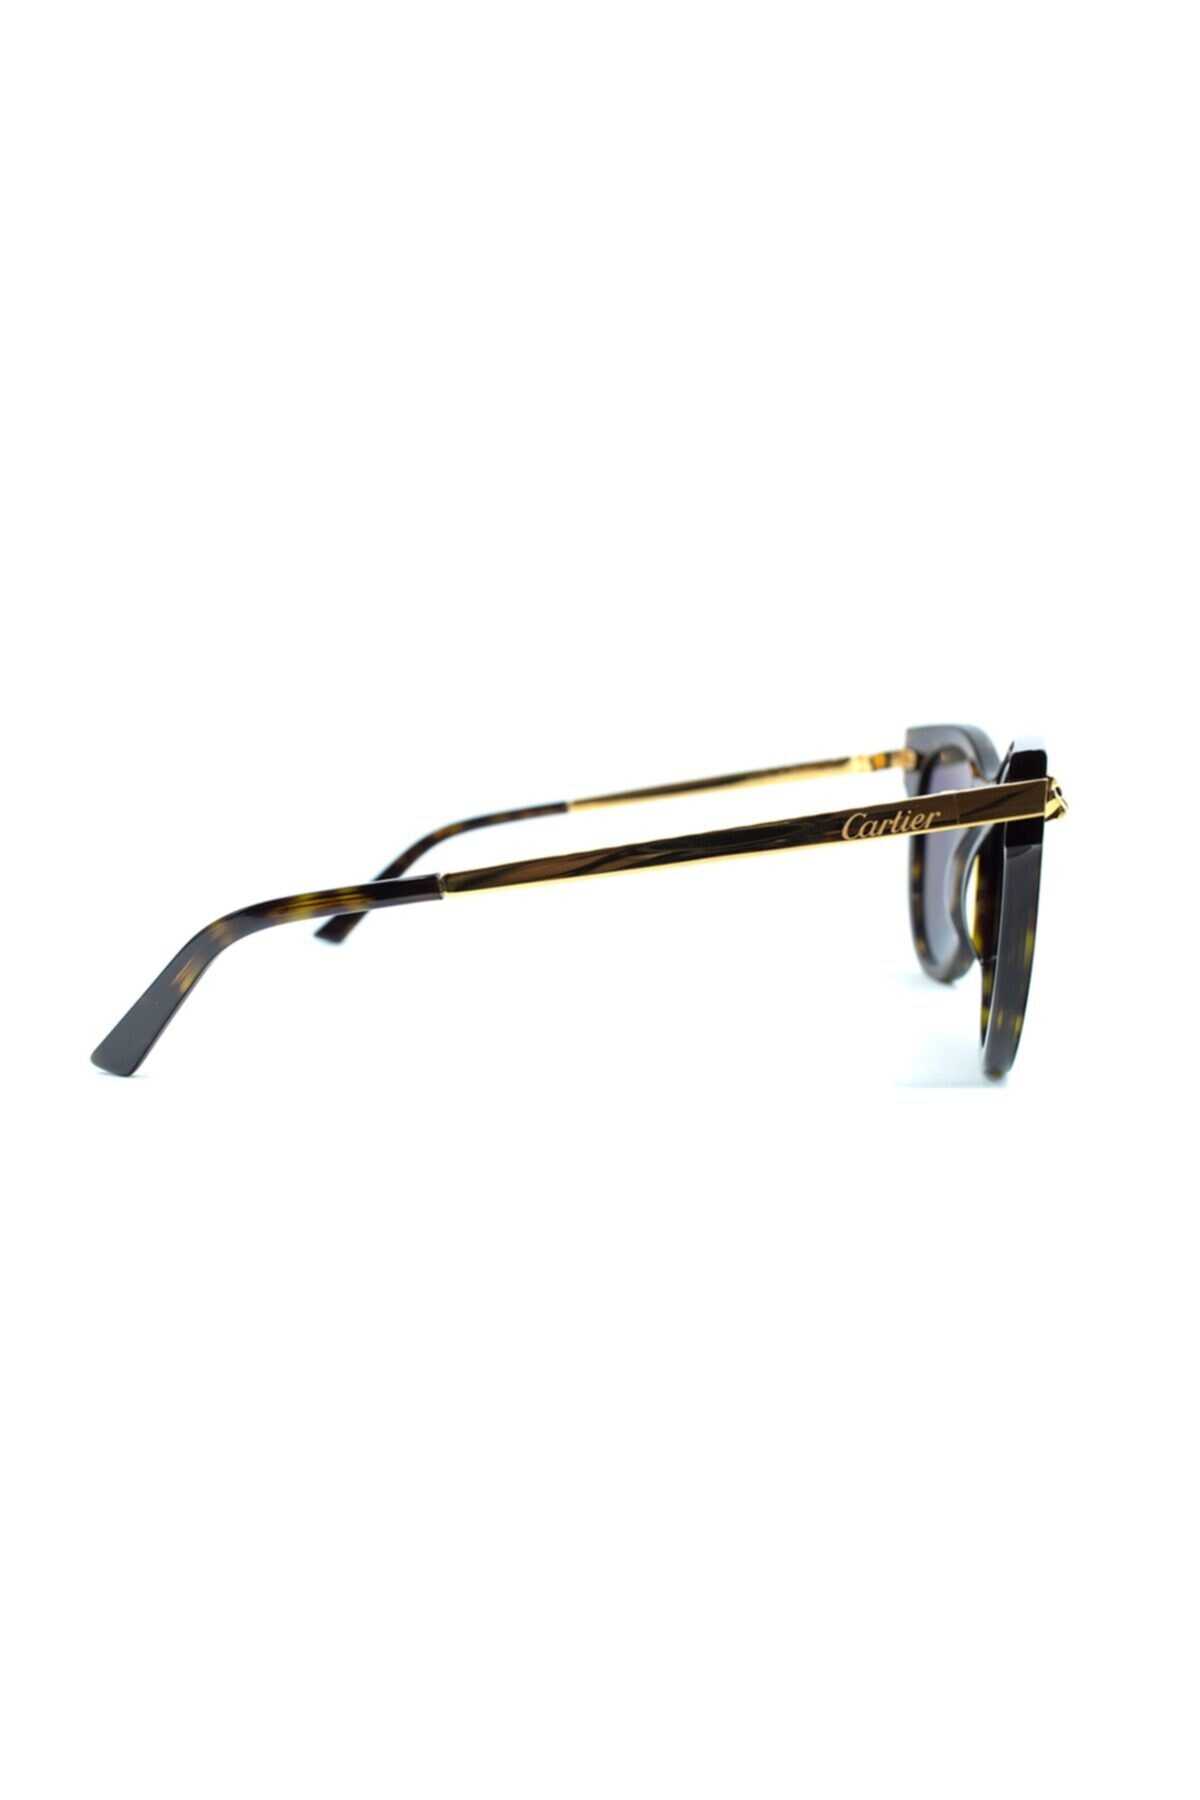 عینک آفتابی یونیسکس مدل Ct0024s 002 50 قهوه ای طلایی برند Cartier